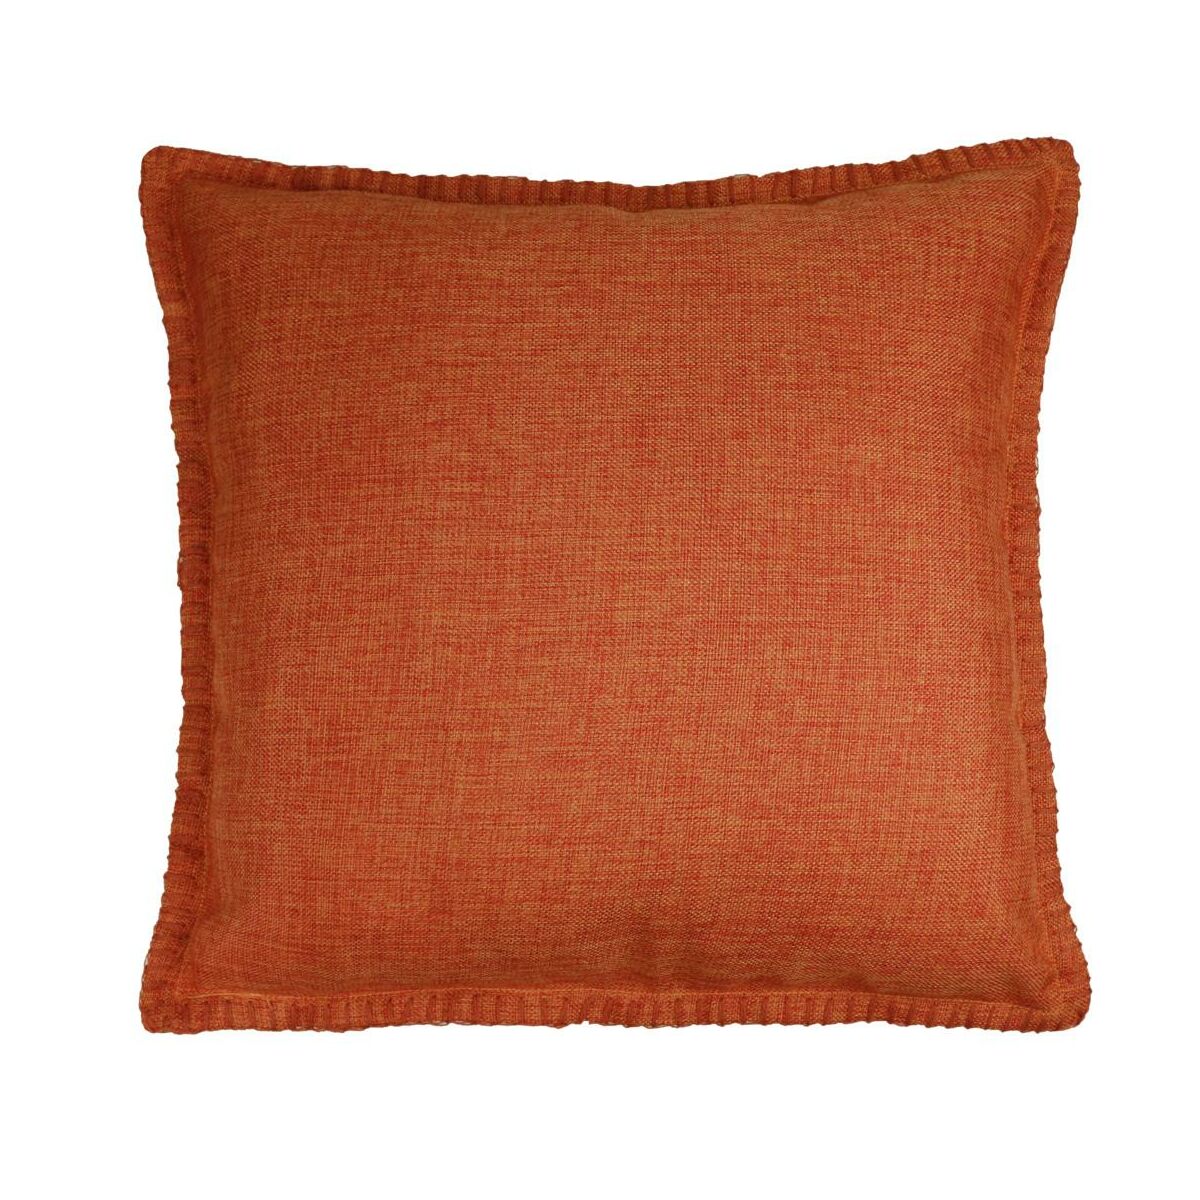 Poszewka na poduszkę Industrial pomarańczowa  45 x 45 cm